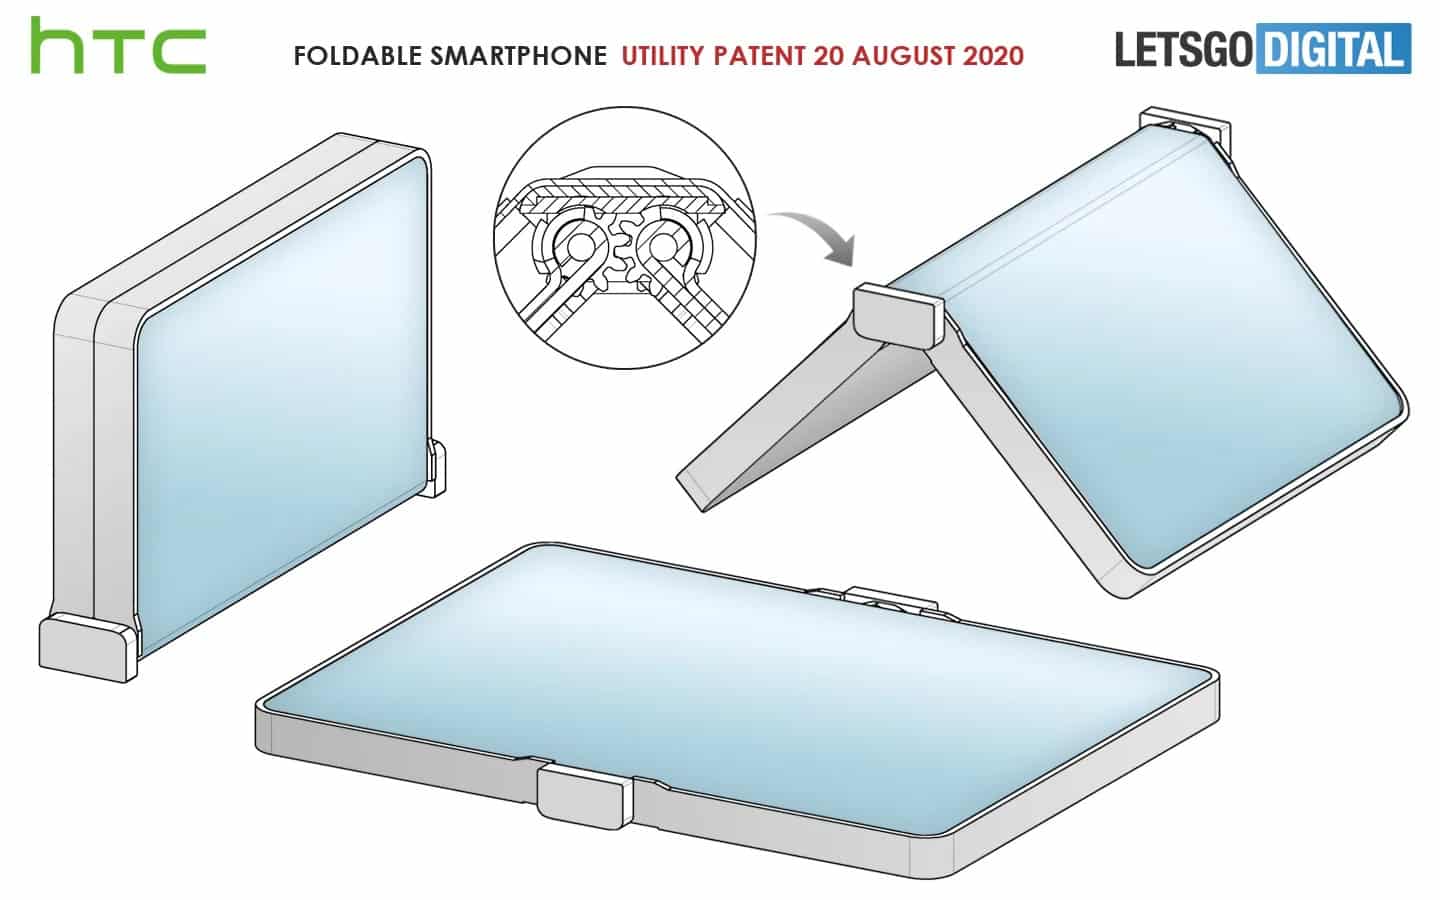 HTC'nin katlanabilir telefon konsepti çok ilgi çekici görünmüyor